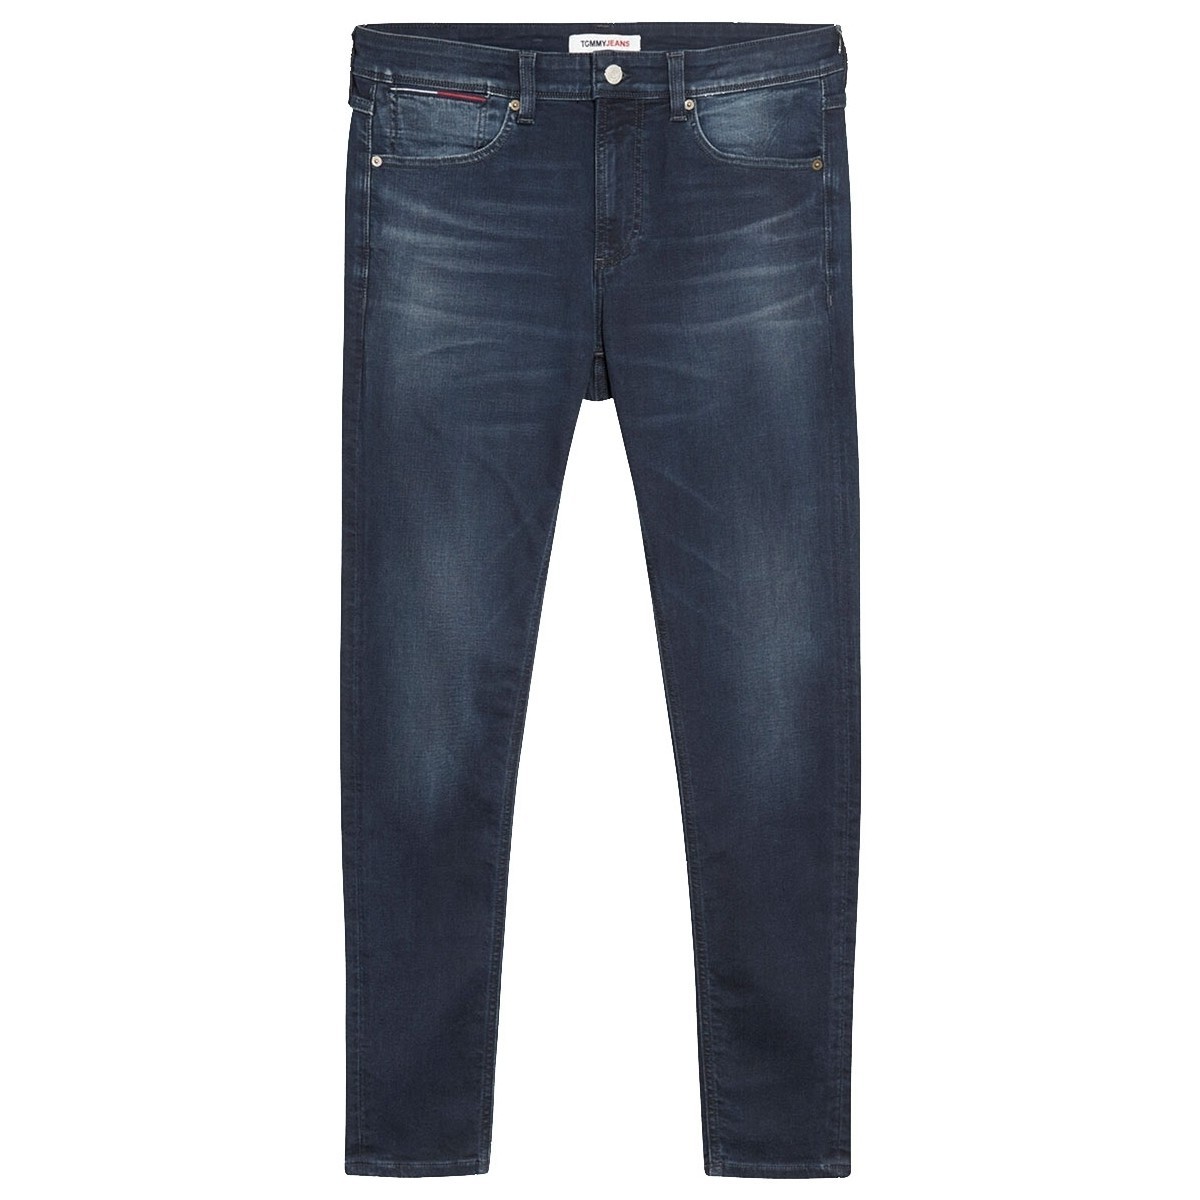 Vêtements Homme Jeans Tommy Jeans Jean  ref 52000 1BZ Multi Bleu